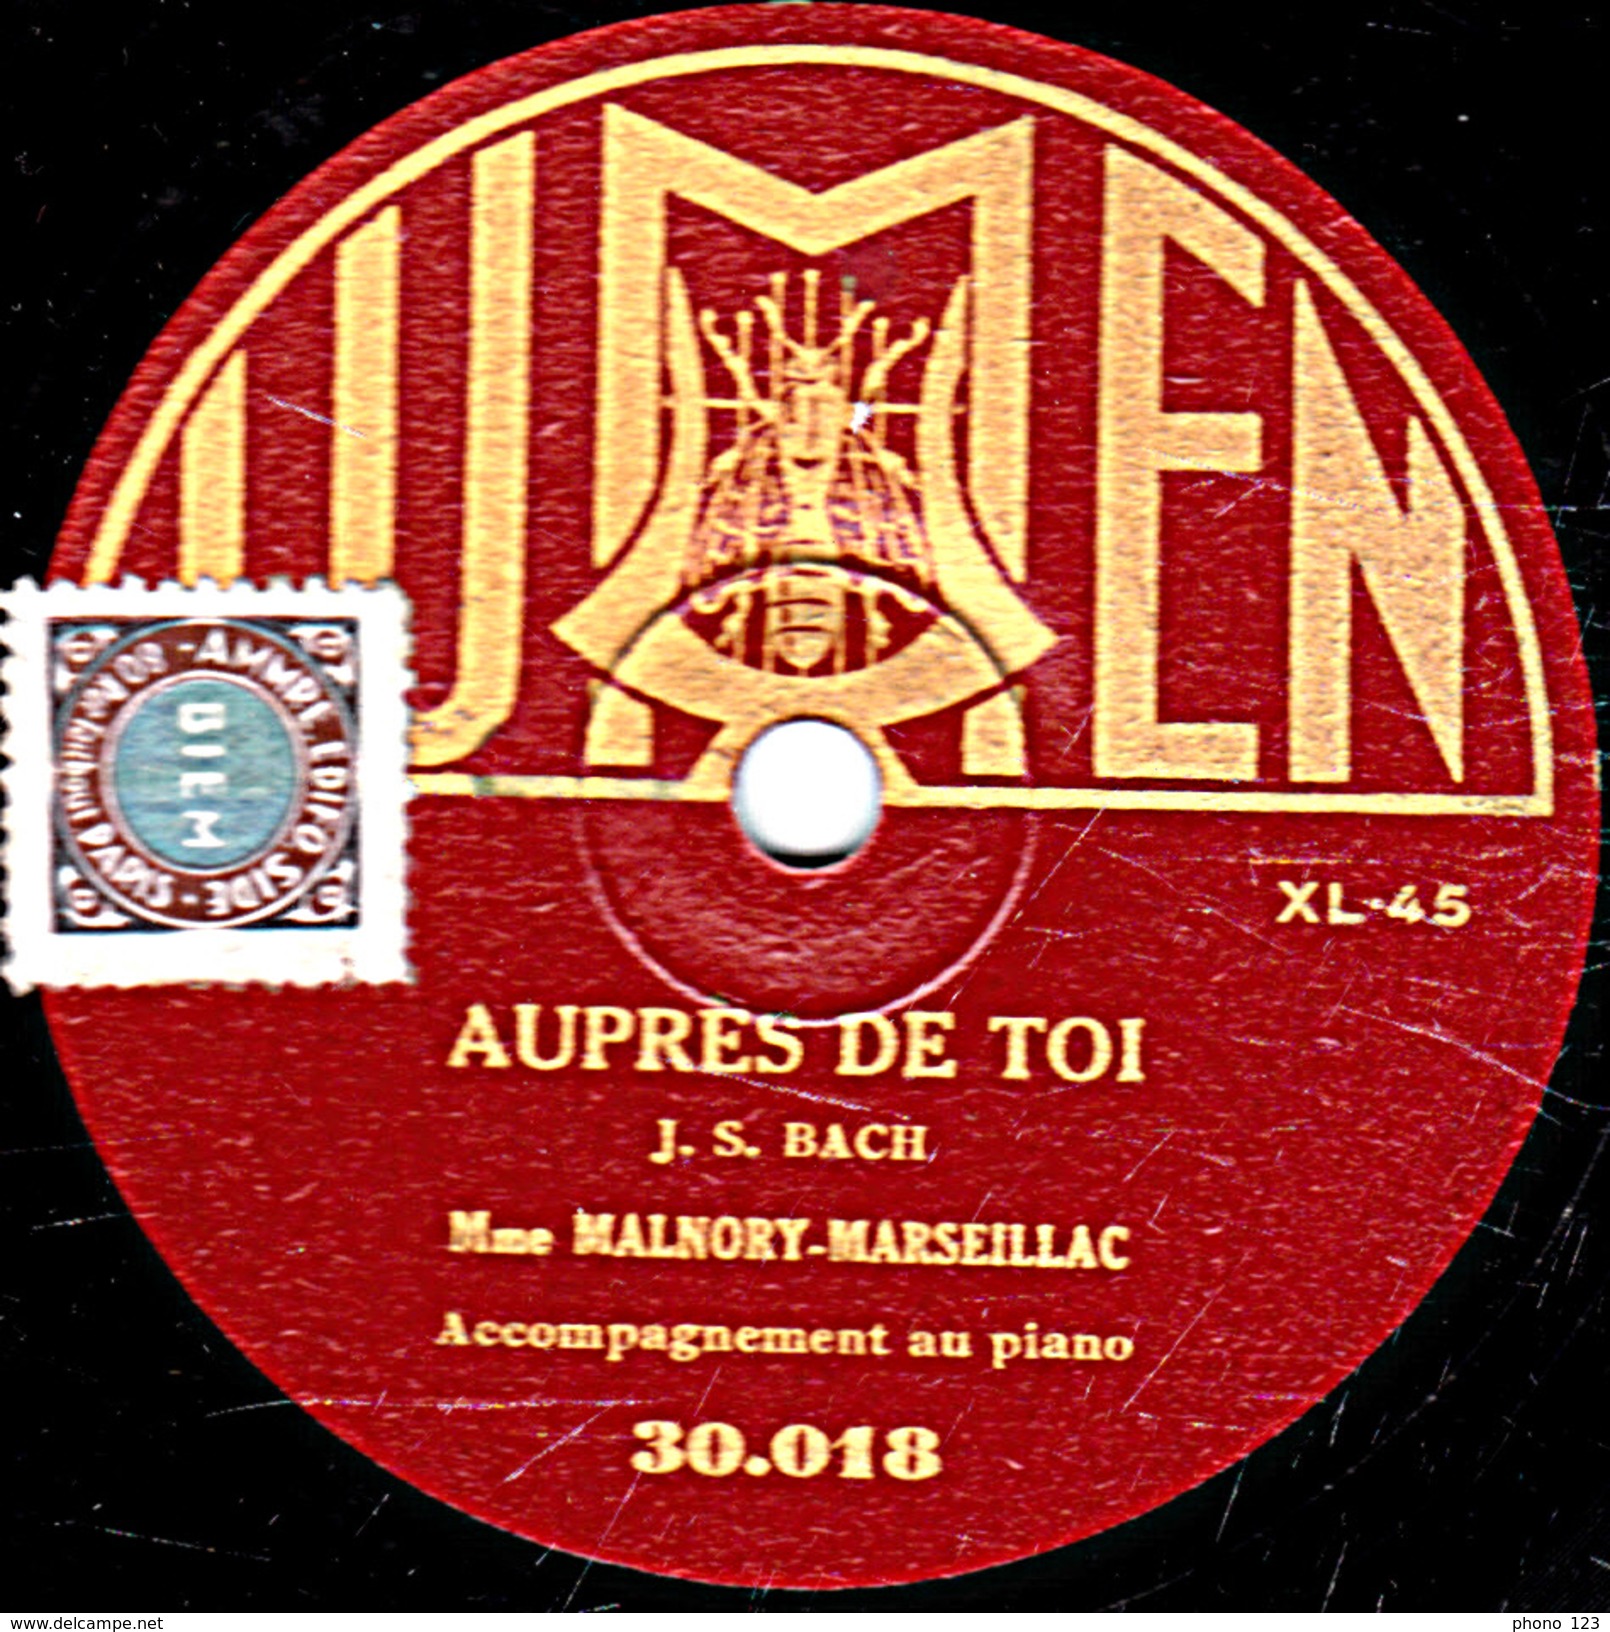 78 T. - 25 Cm - état B - Mme MALNORY MARSEILLAC - O MON DOUX JESUS - AUPRES DE TOI - 78 T - Disques Pour Gramophone